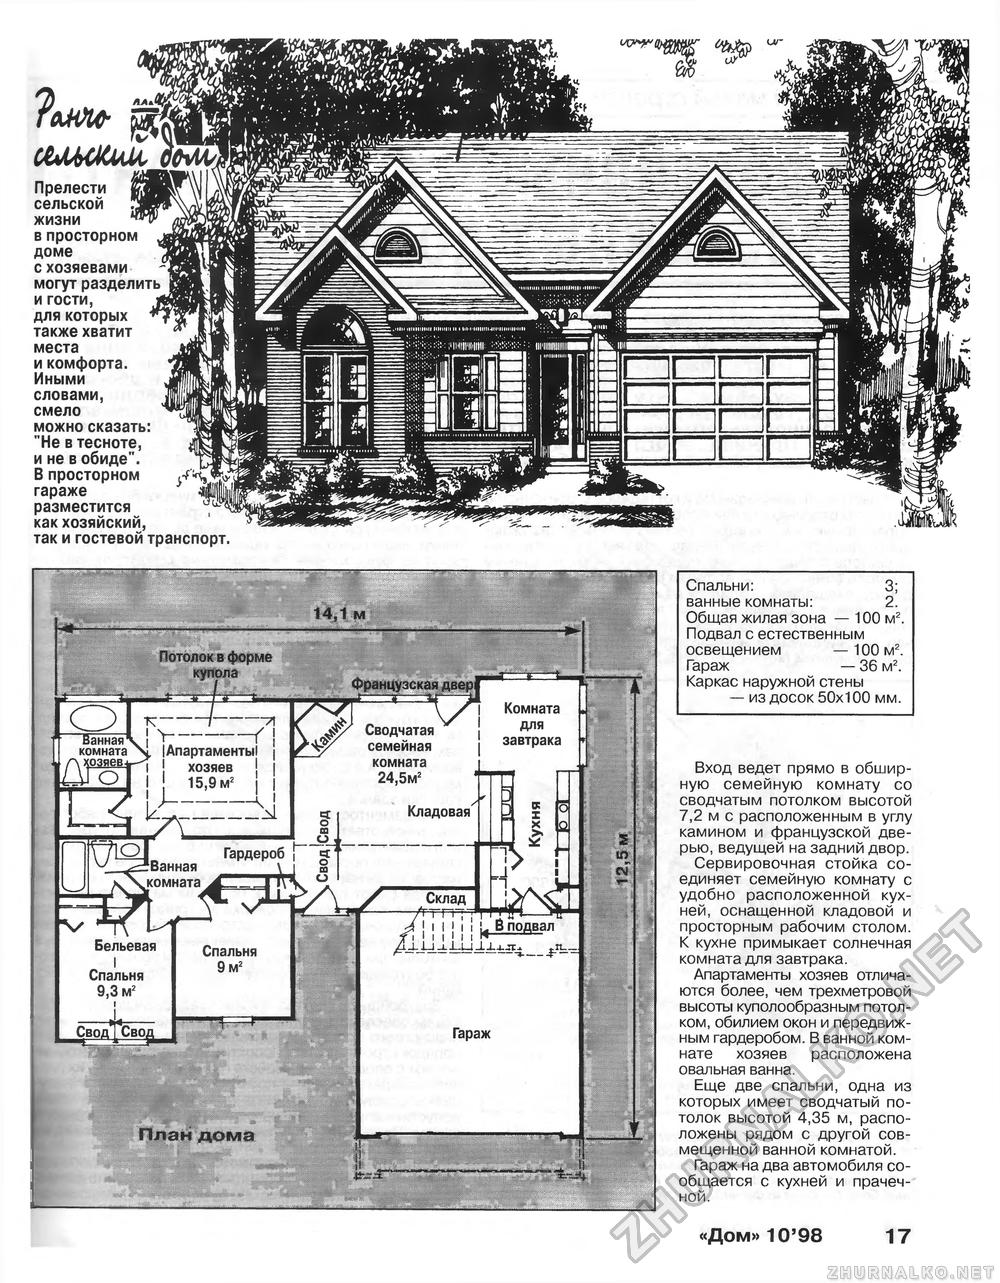 Дом 1998-10, страница 17